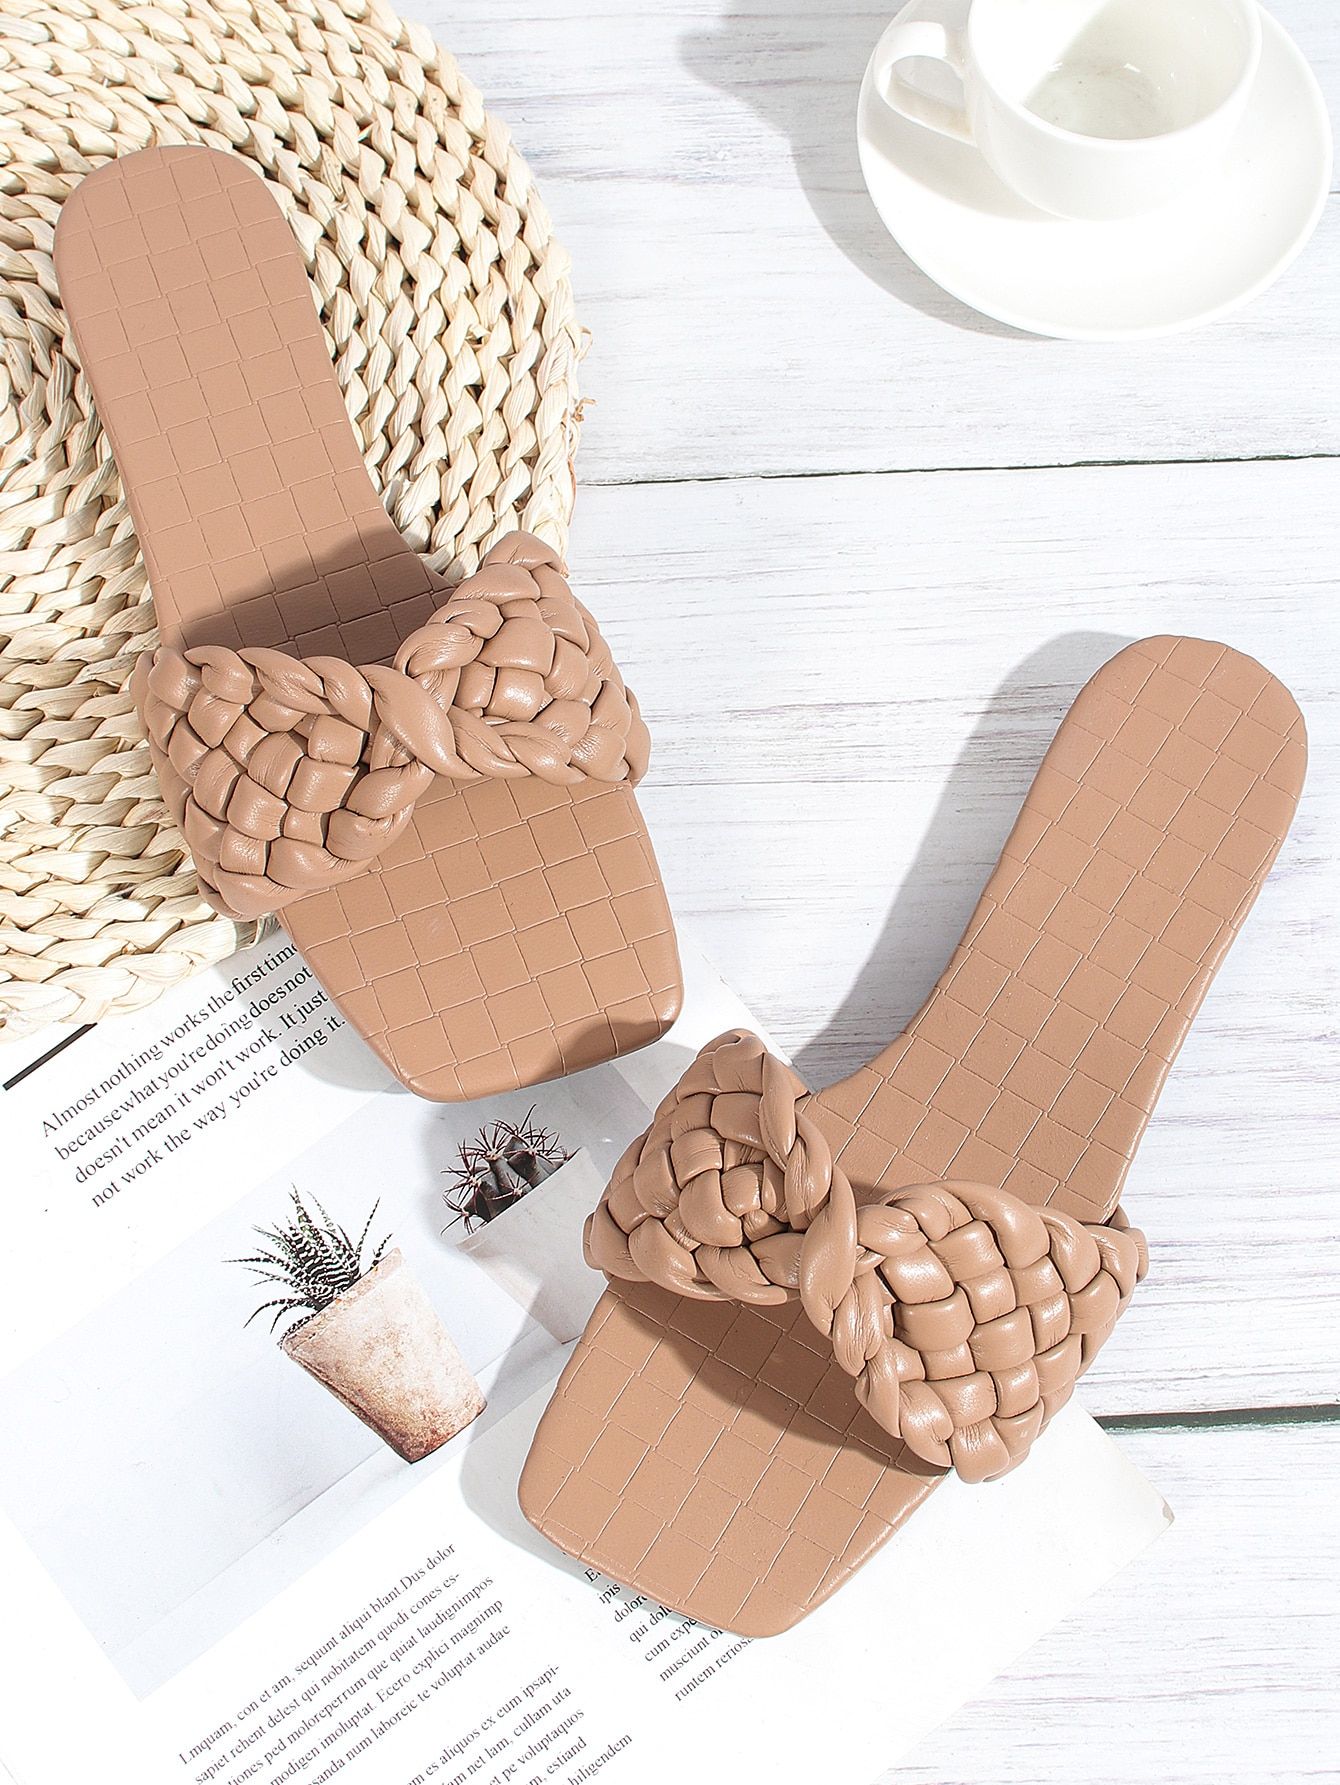 Braided Design Slide Sandals | SHEIN